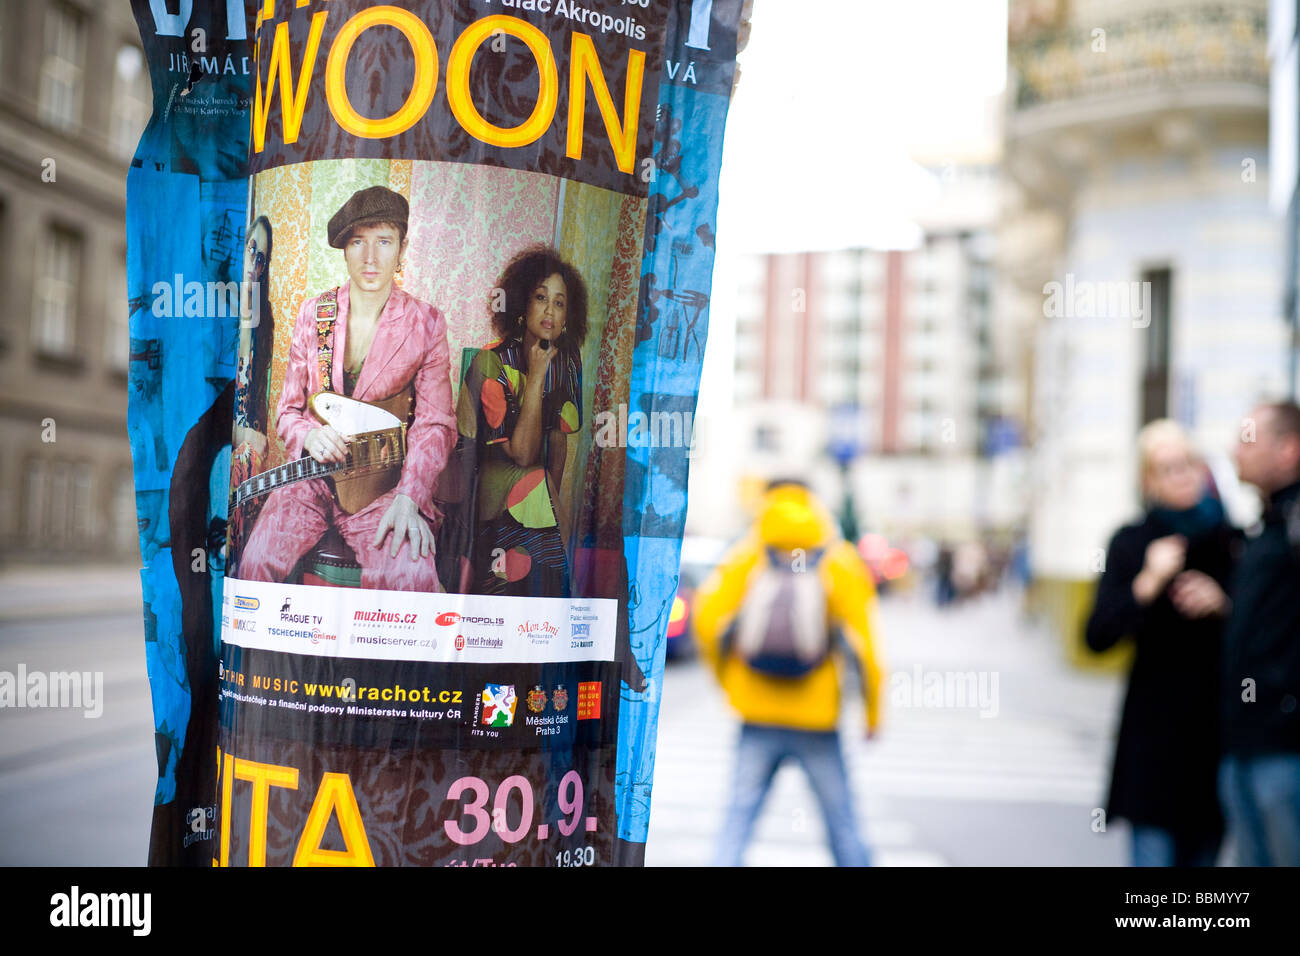 Poster per Swoon una banda ceca sulla strada del centro di Praga Repubblica Ceca Foto Stock